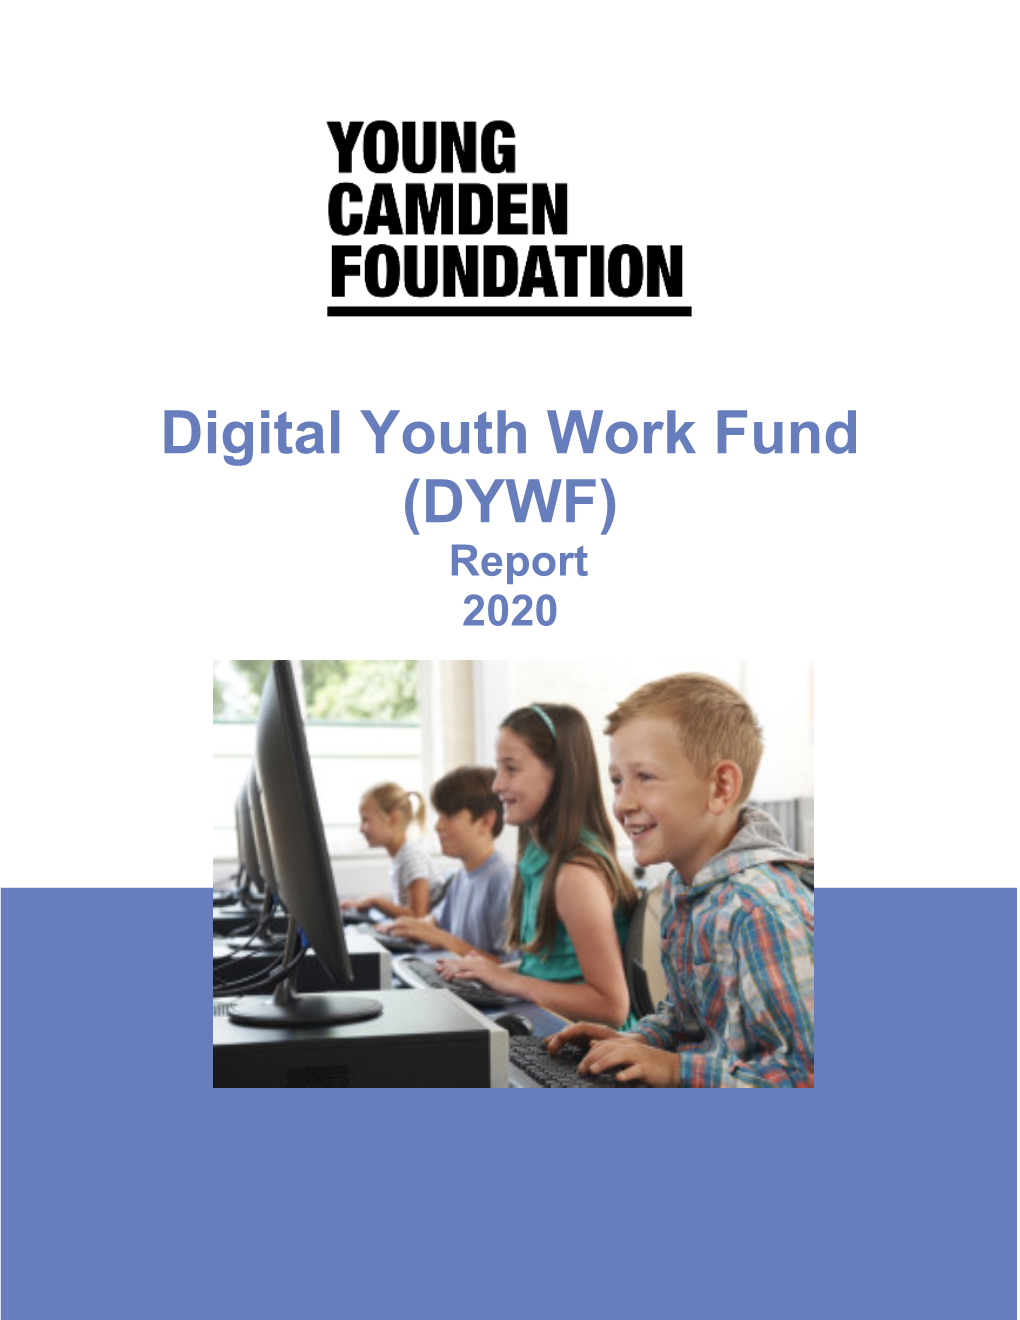 Digital Youth Work Fund (DYWF) Report 2020